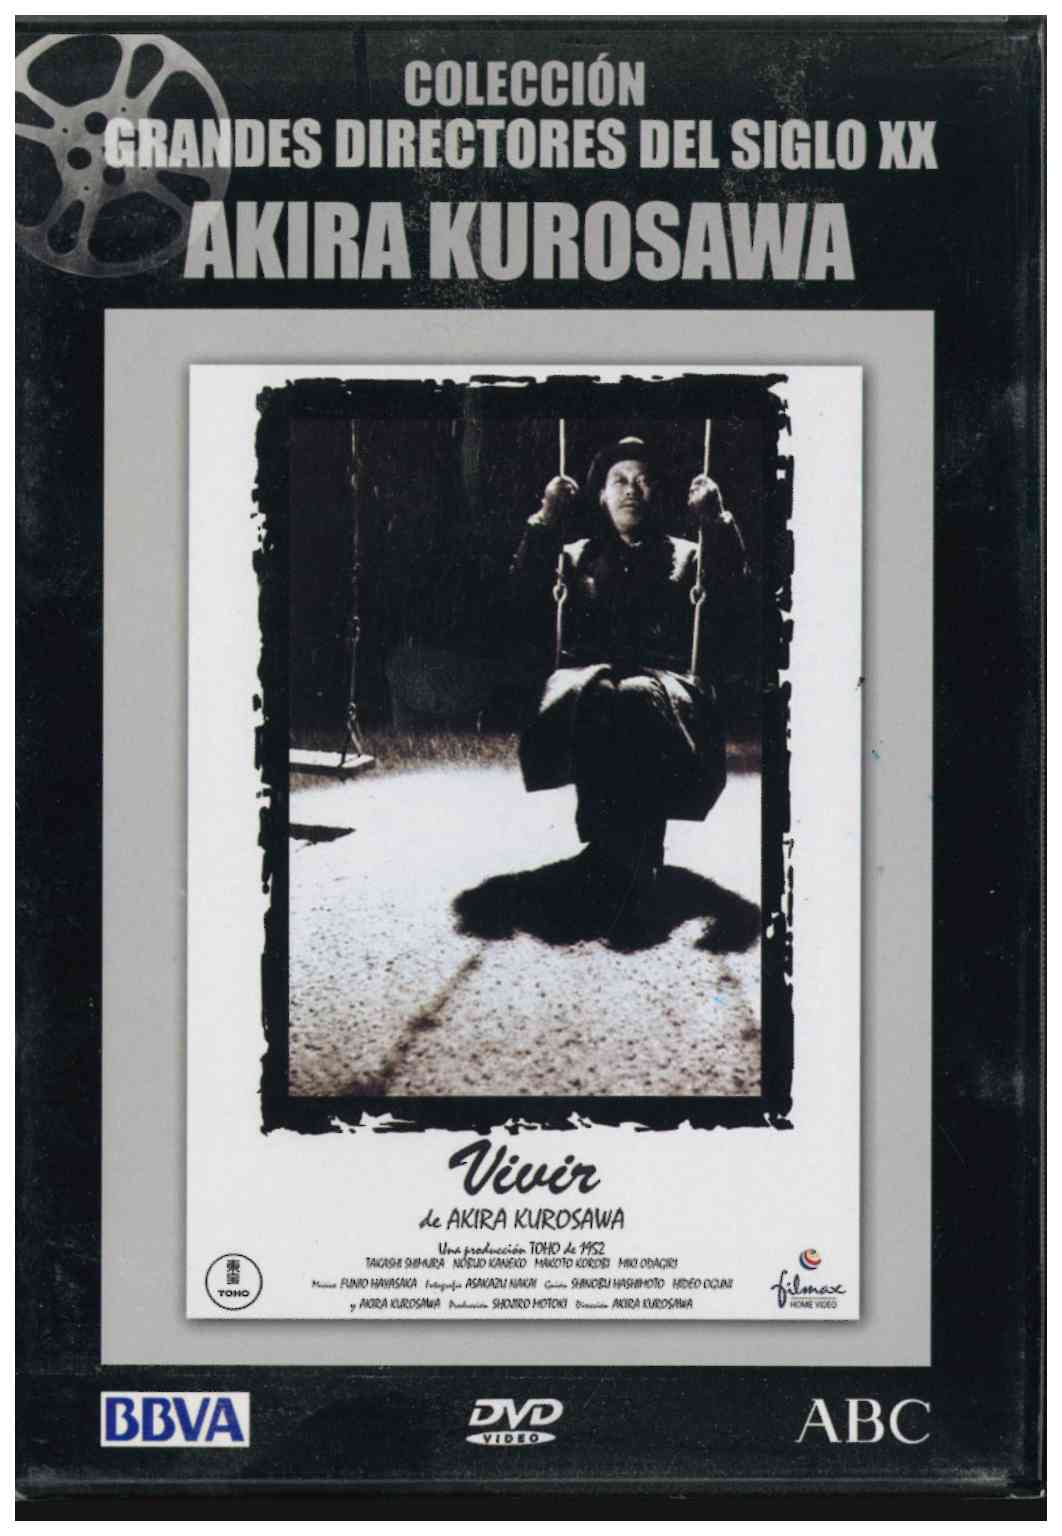 Colección grandes directores del siglo XX. Akira Kurosawa. Vivir